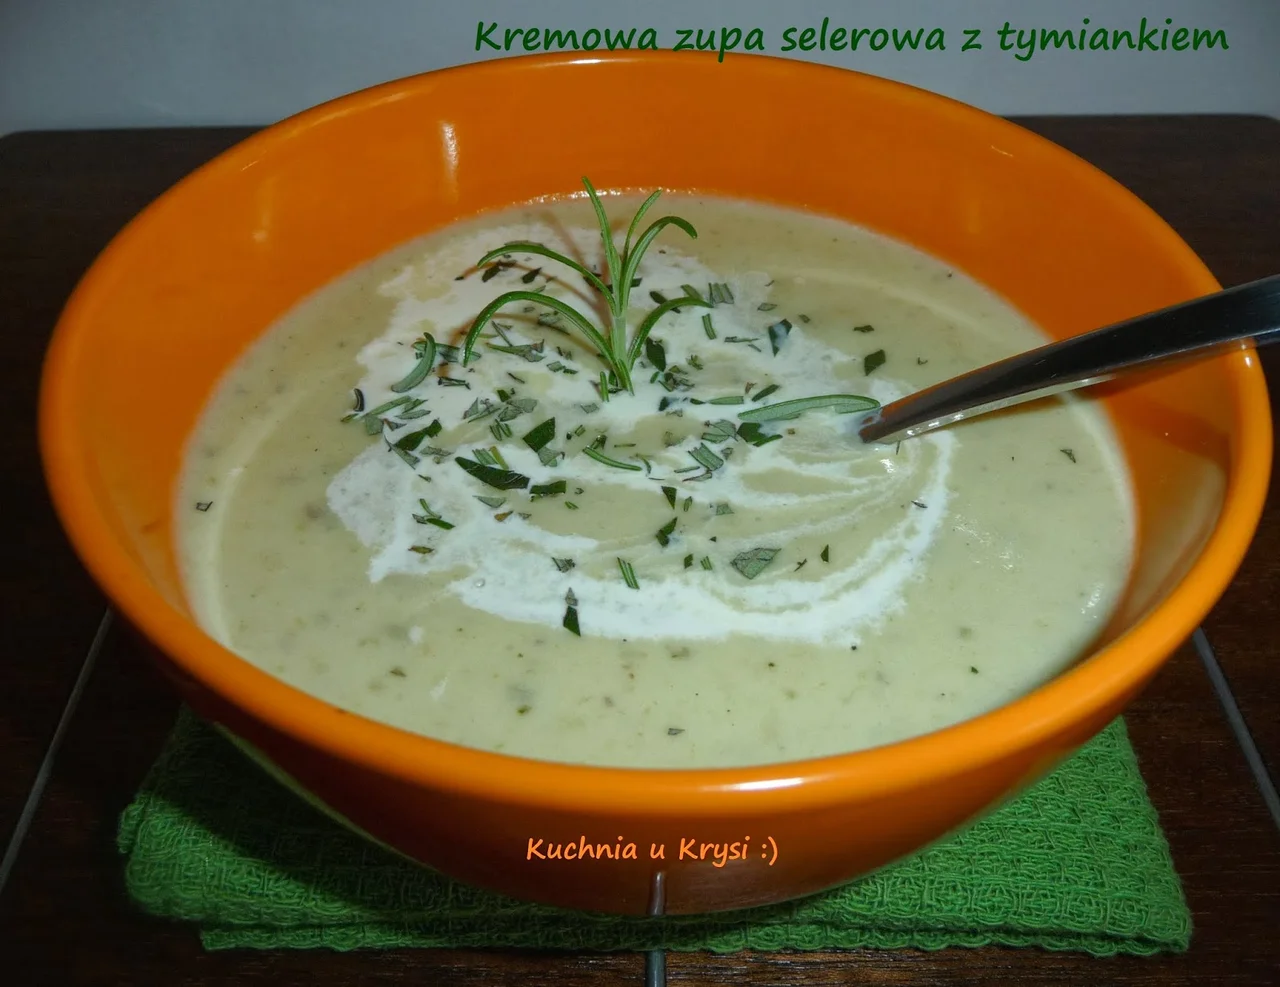 Kremowa zupa